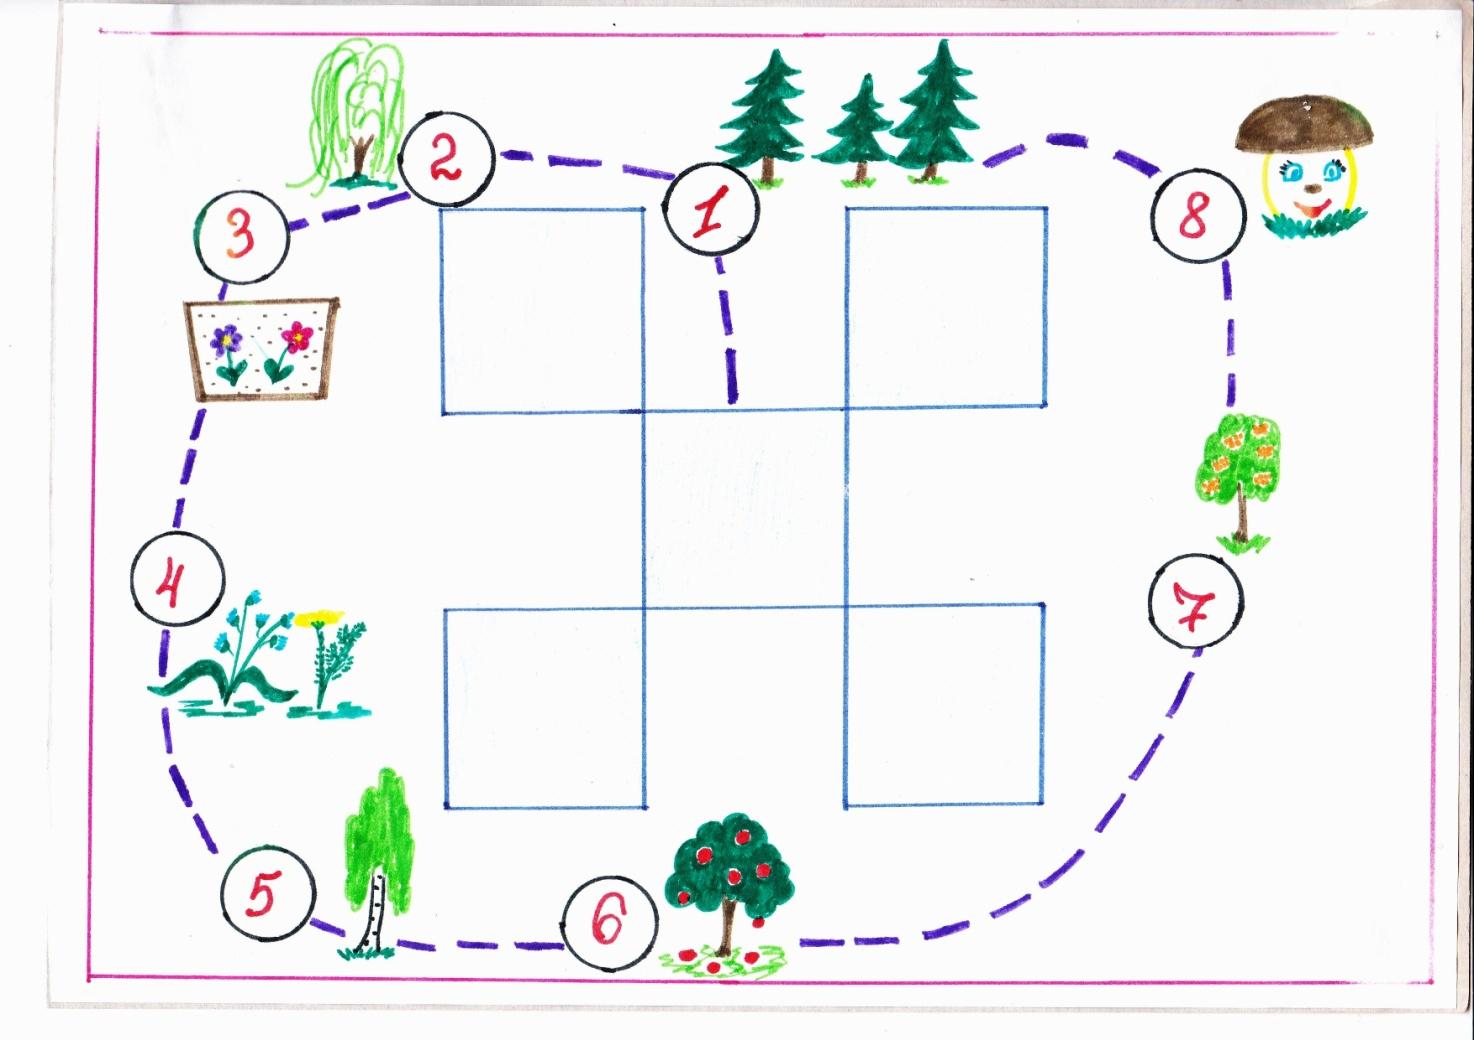 Занятие экологическая тропа средняя группа. План схема экологической тропы в ДОУ. Карта экологической тропы в ДОУ. Маршрутная карта экологической тропы. Схема экологической тропы в детском саду рисунок.